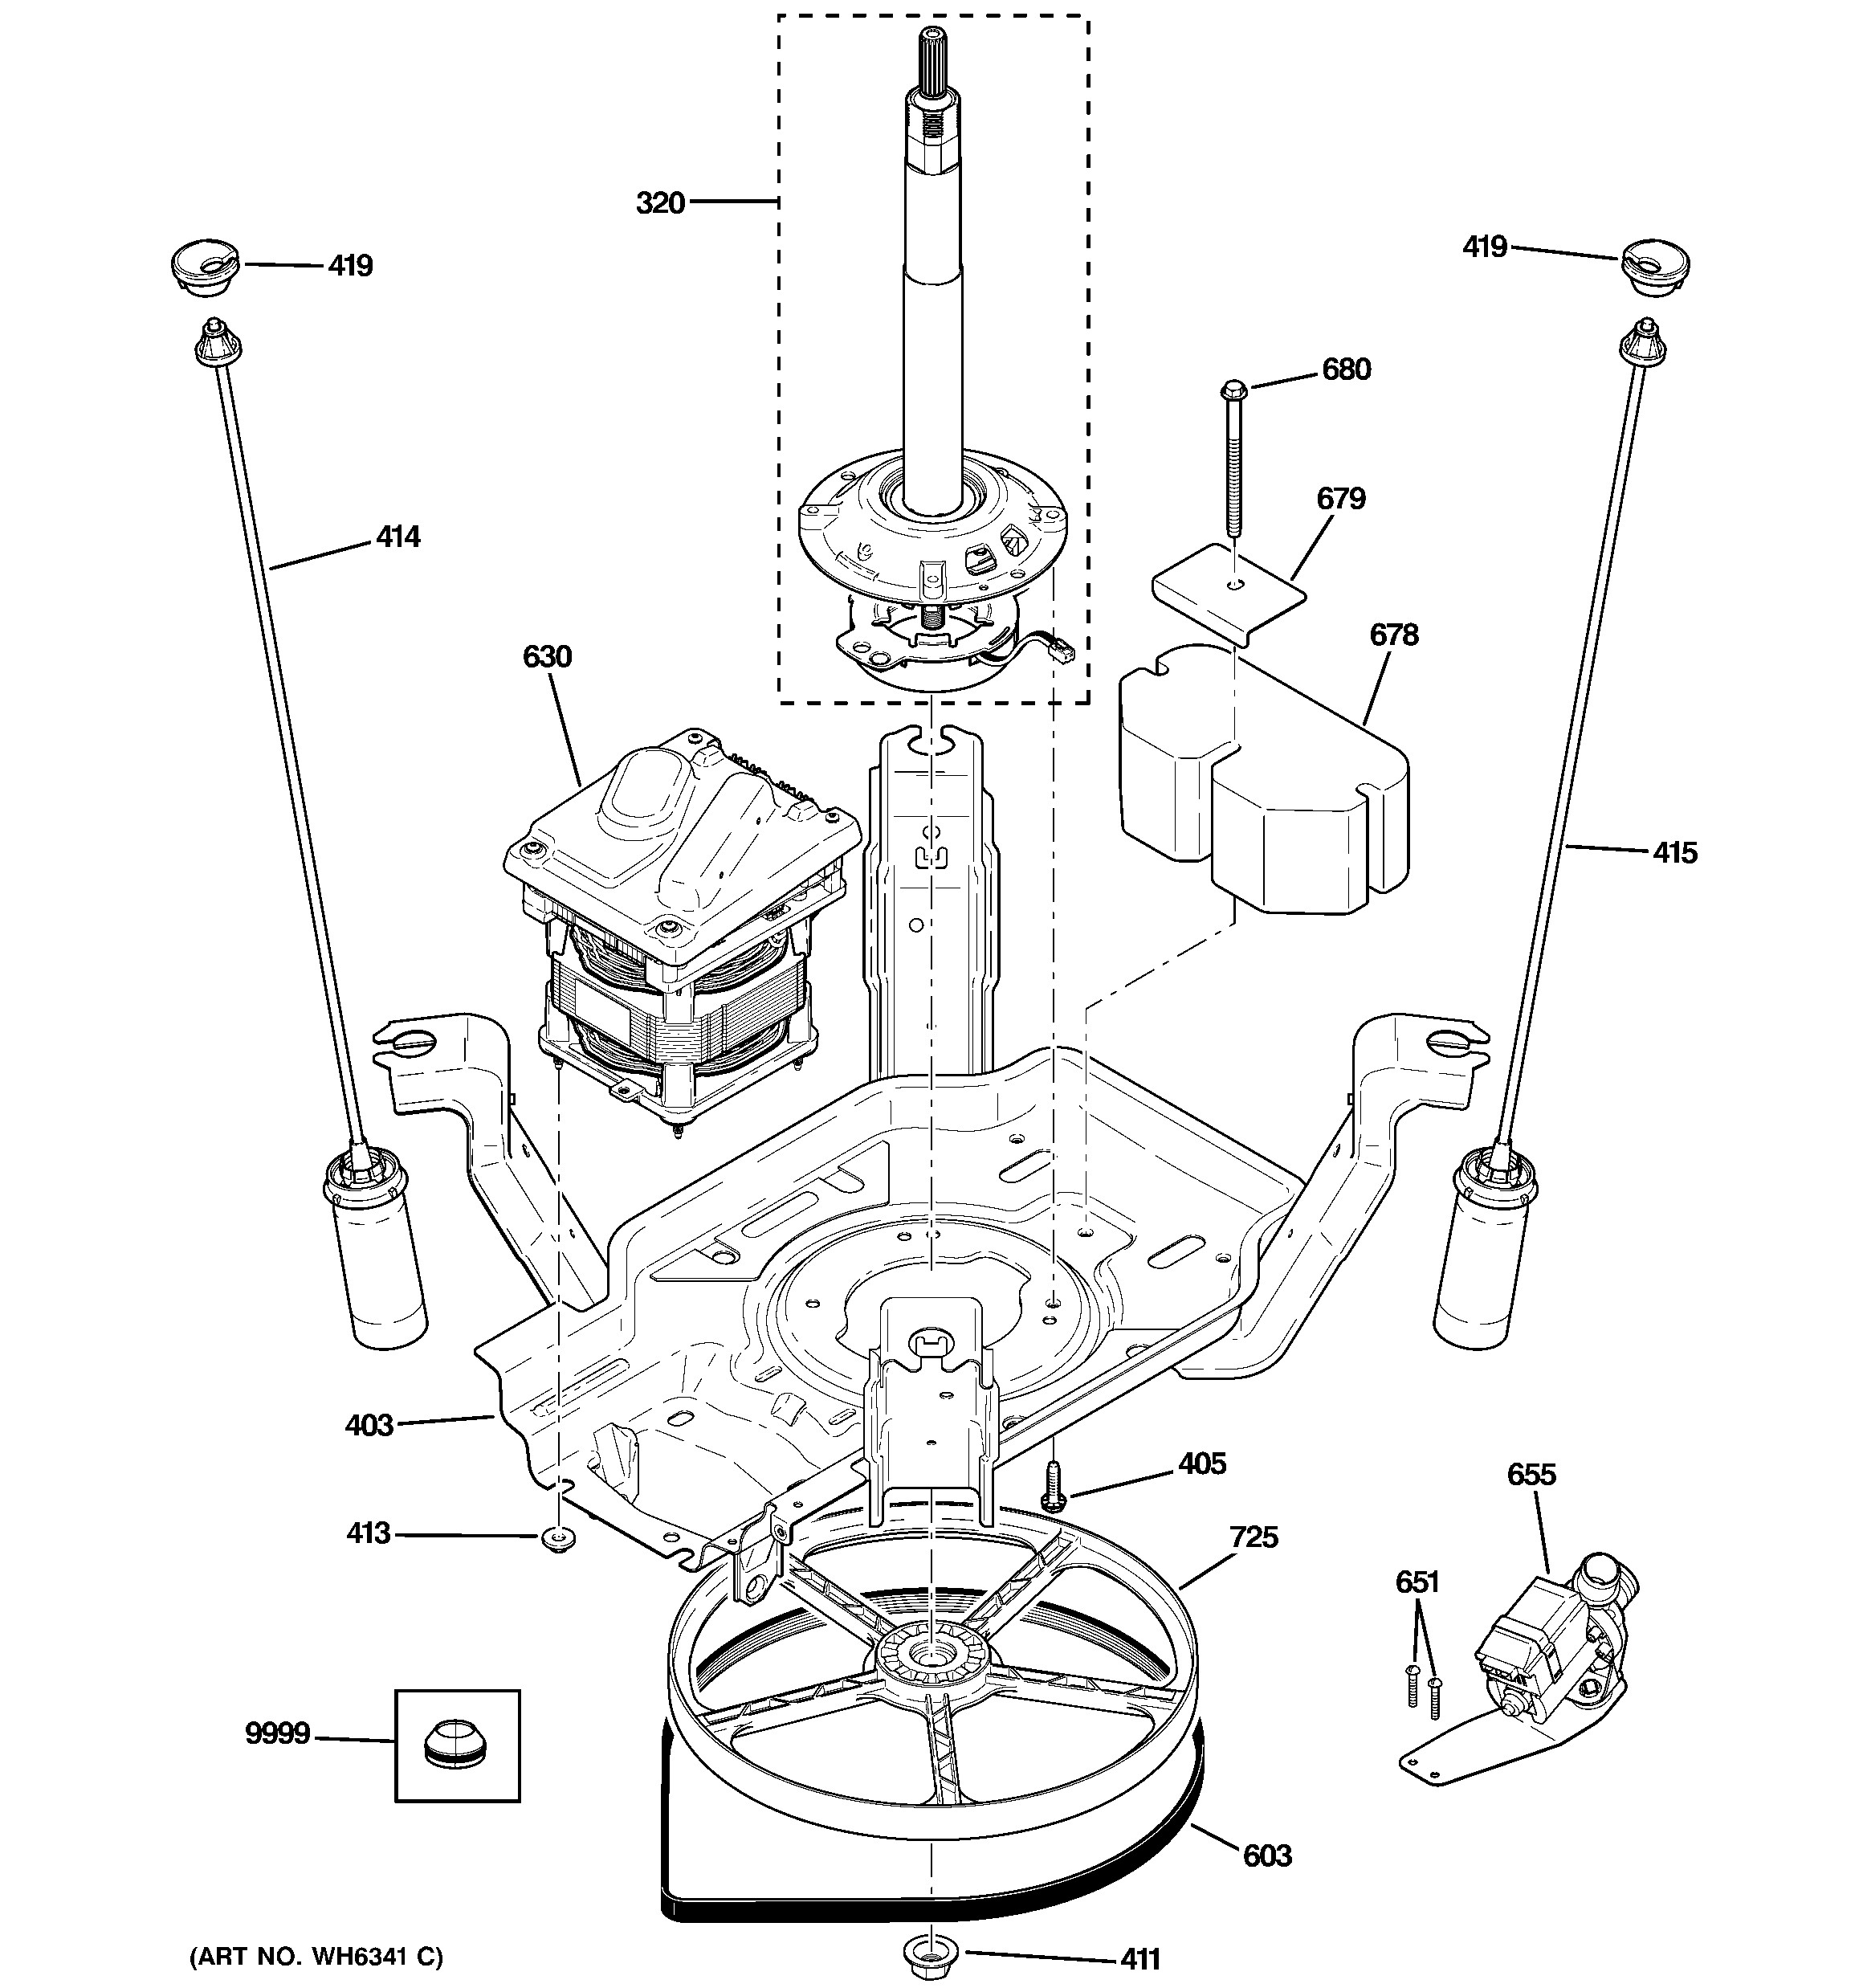 Shop Vac Parts Diagram Luxury Ge Washer Parts Model Whdsr316g1ww Oreck Pro12 Vacuum Parts